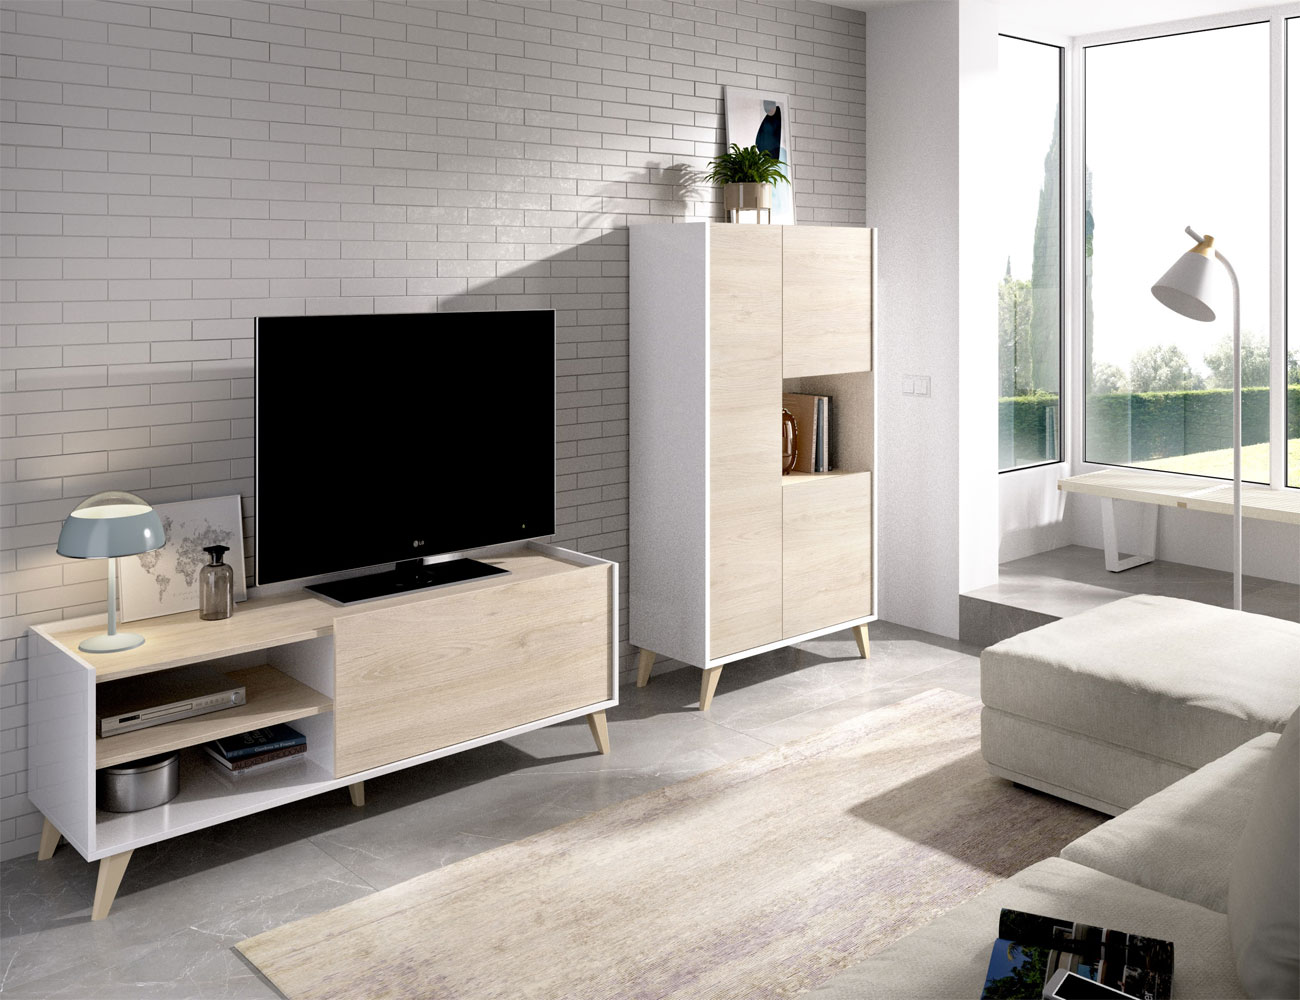 Mueble de salón de 200 cm. acabado Lacado blanco brillo y gris de estilo  nórdico urbano muy actual